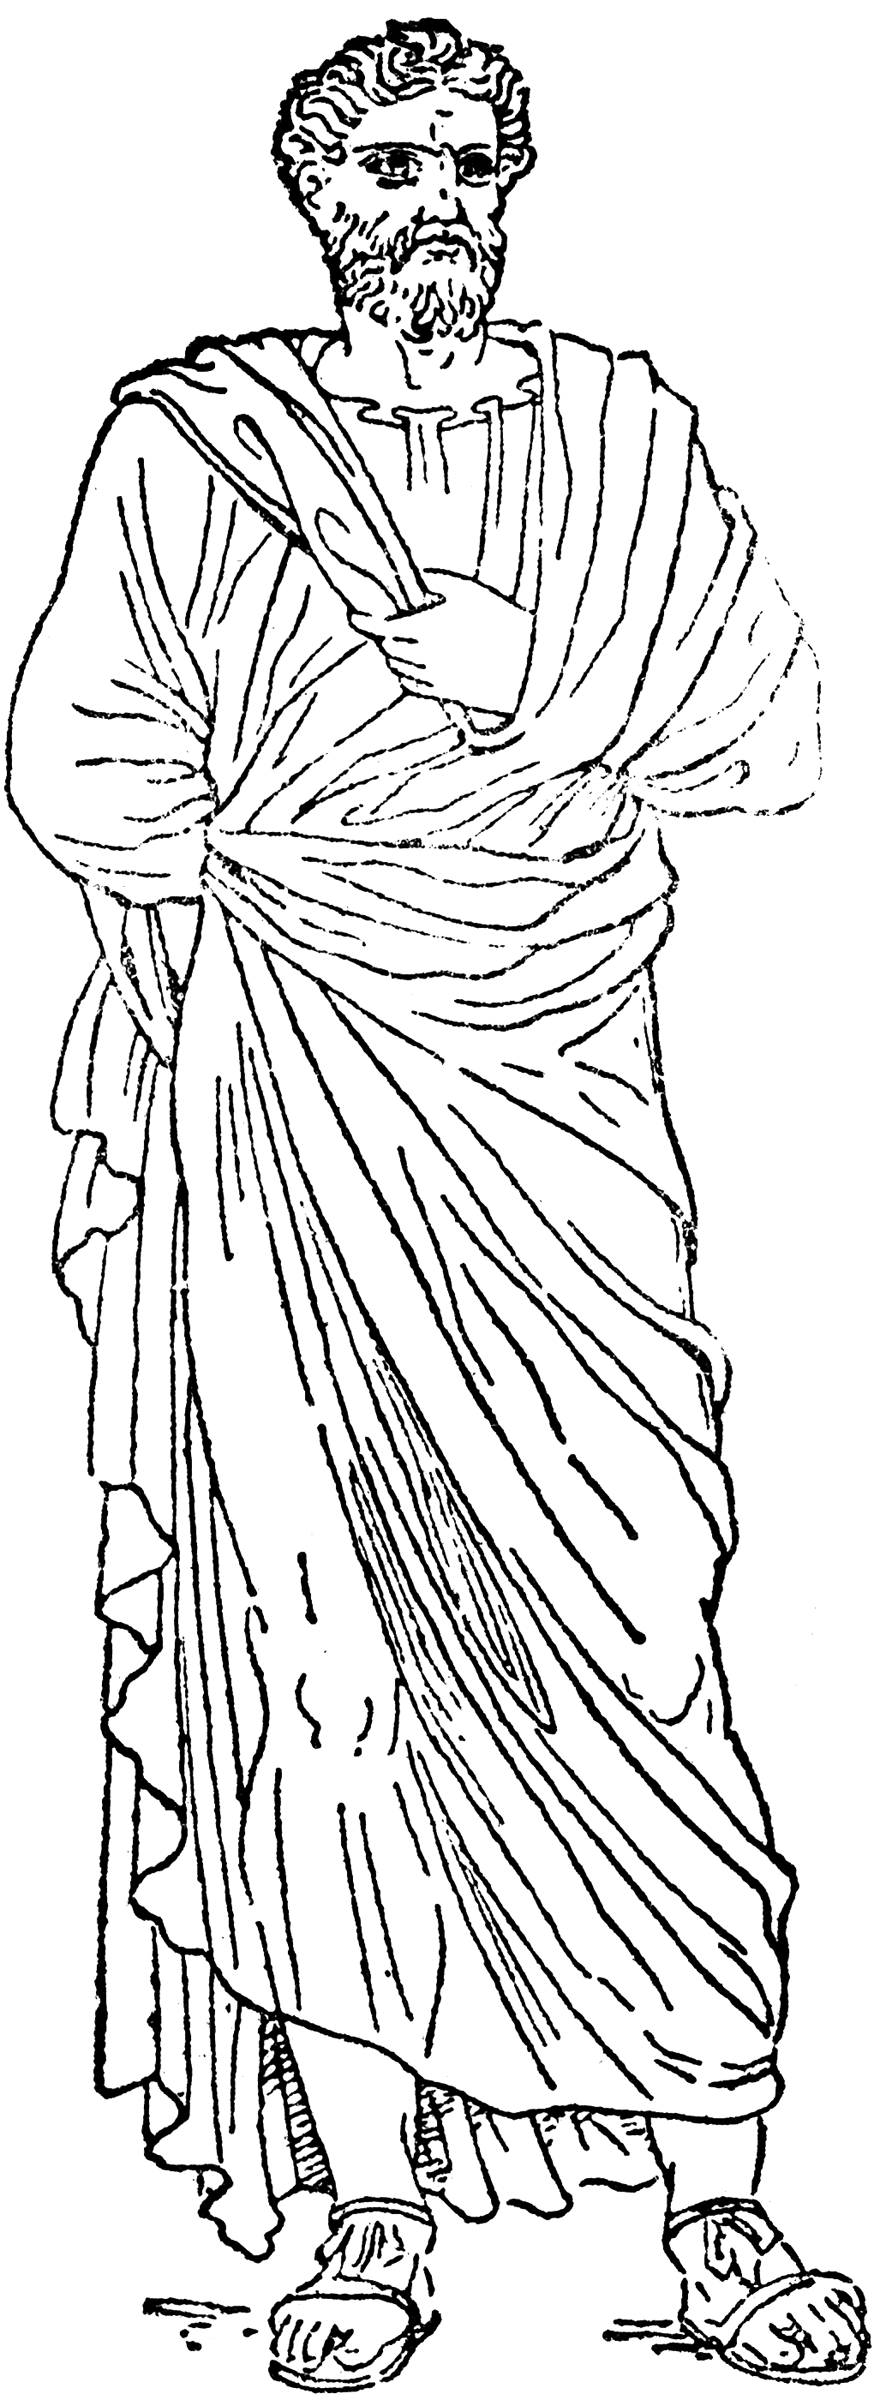 Marcus Aurelius Antoninus | ClipArt ETC